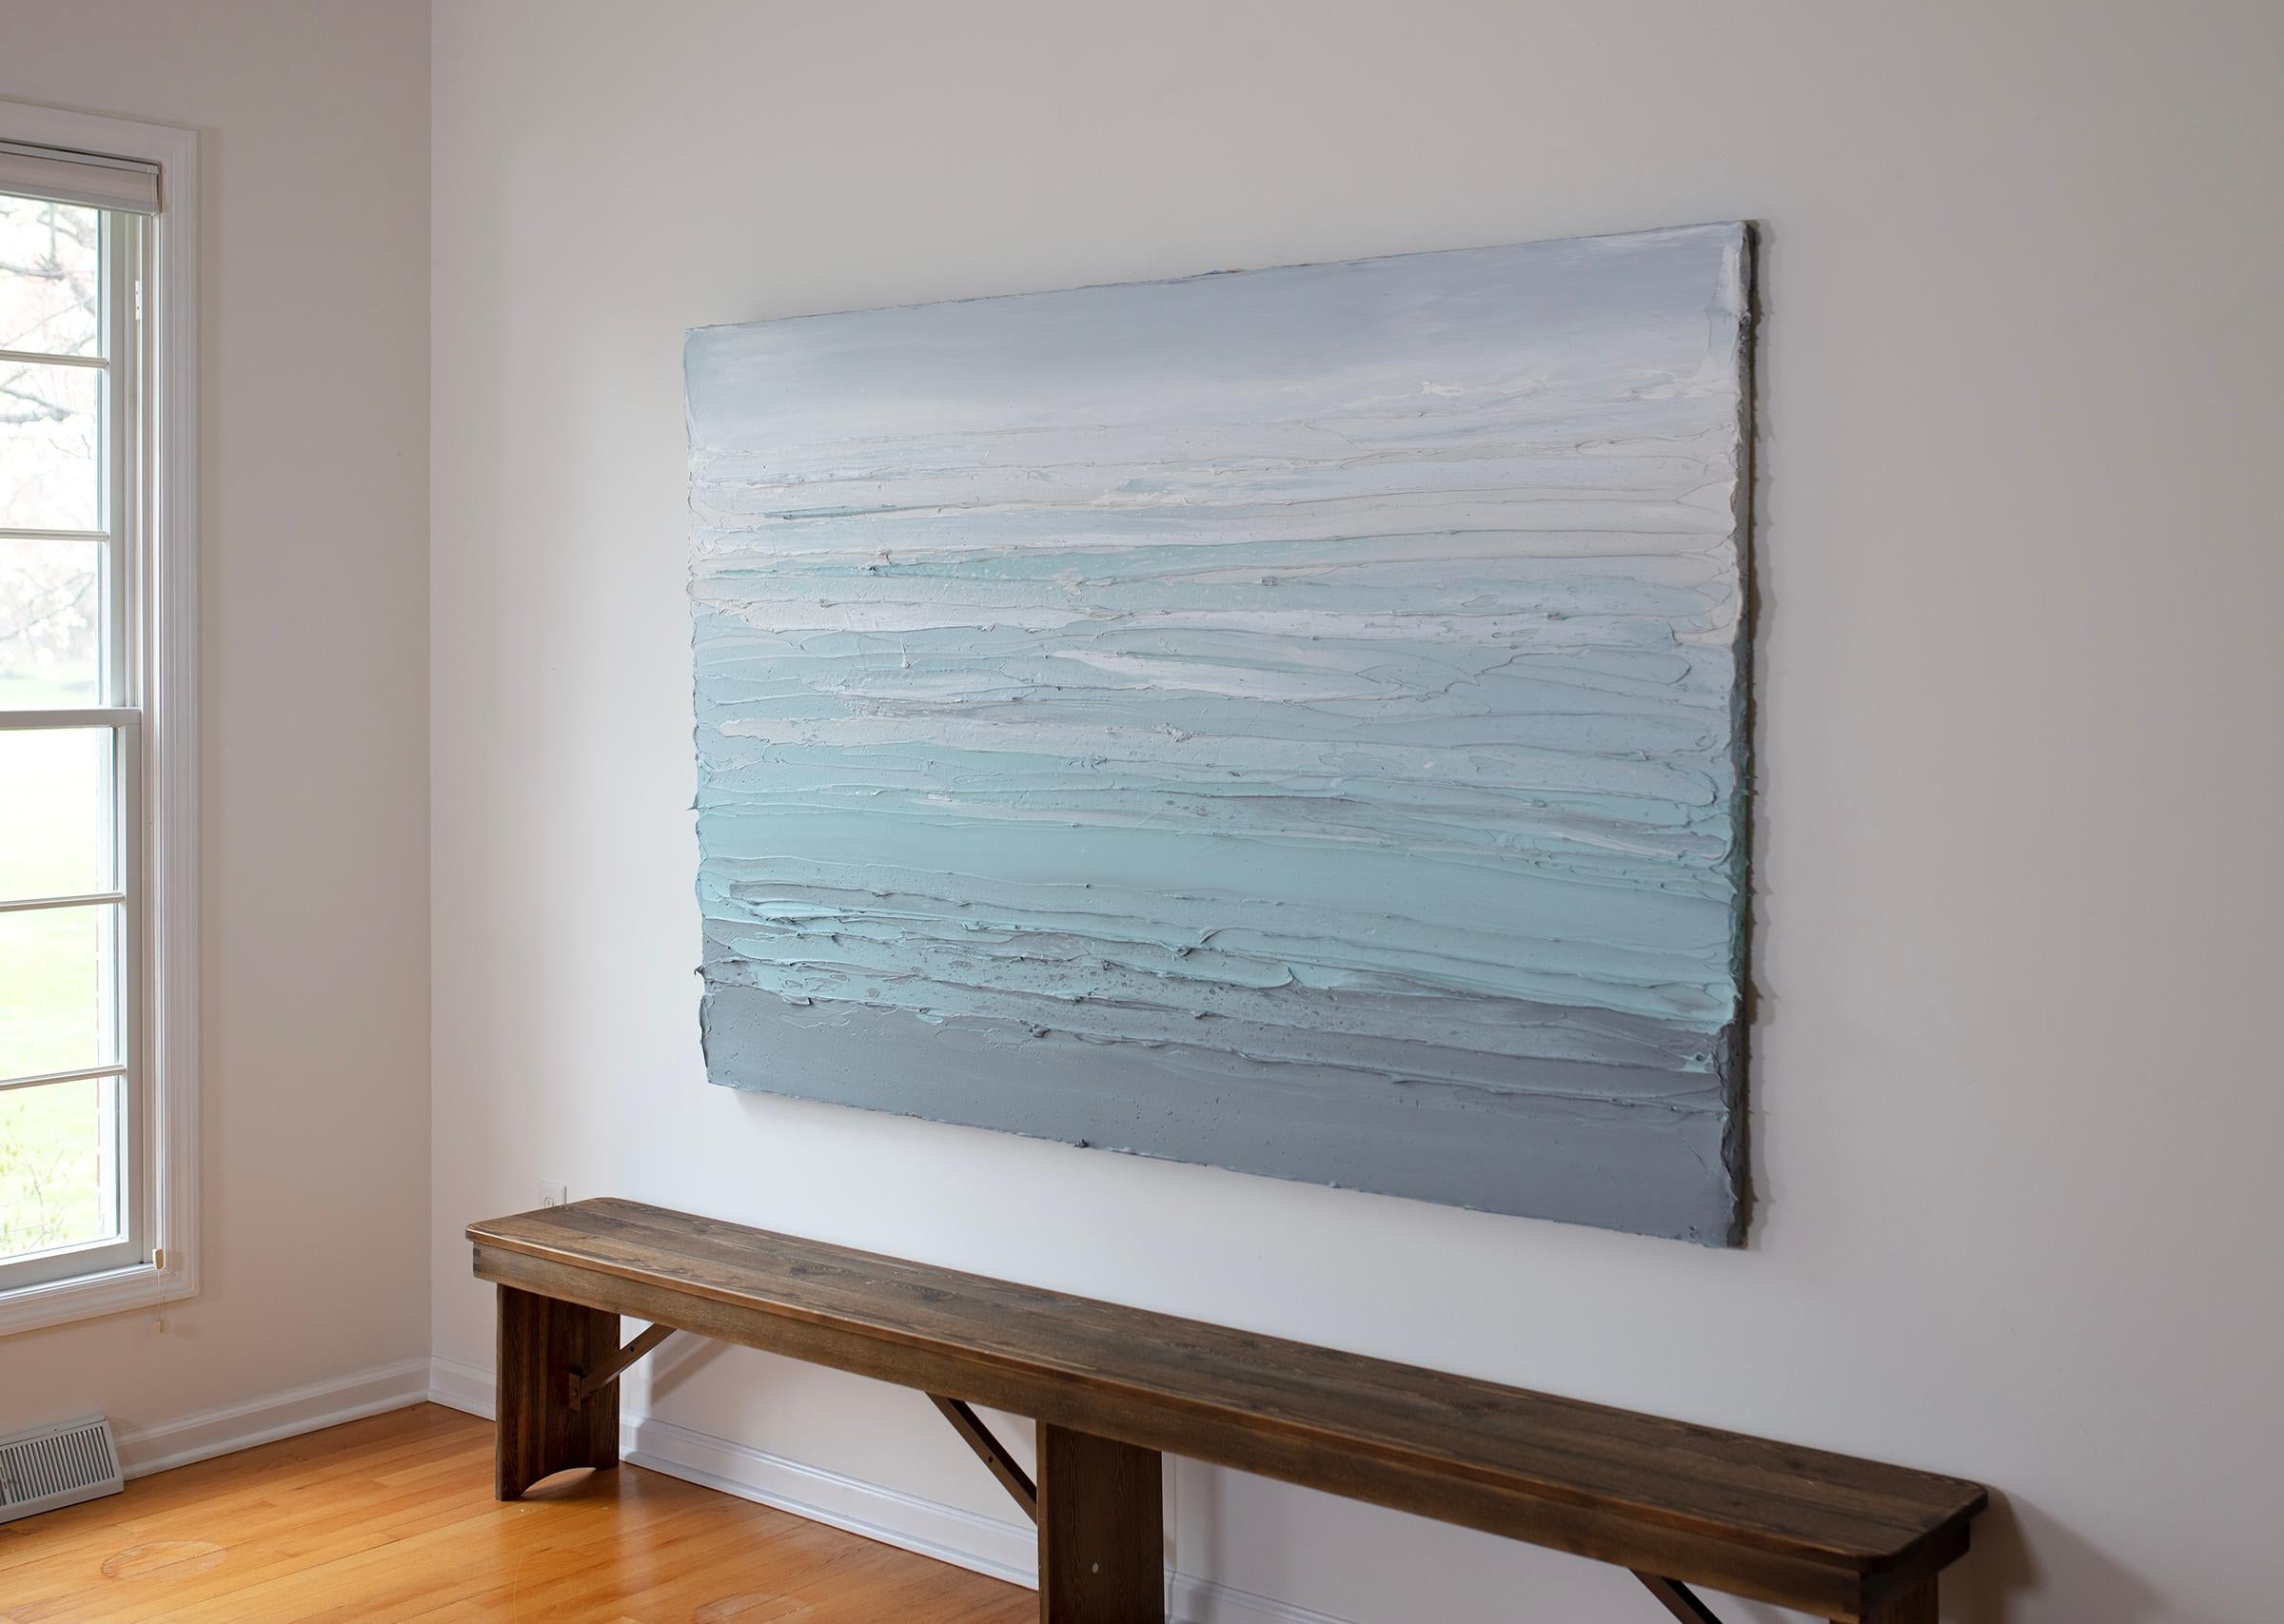 Ce grand tableau abstrait de Teodora Guererra présente une palette côtière légère de bleu, de gris clair et de blanc. L'artiste applique d'épaisses couches de peinture en faisant de larges gestes horizontaux pour créer une surface épaisse et